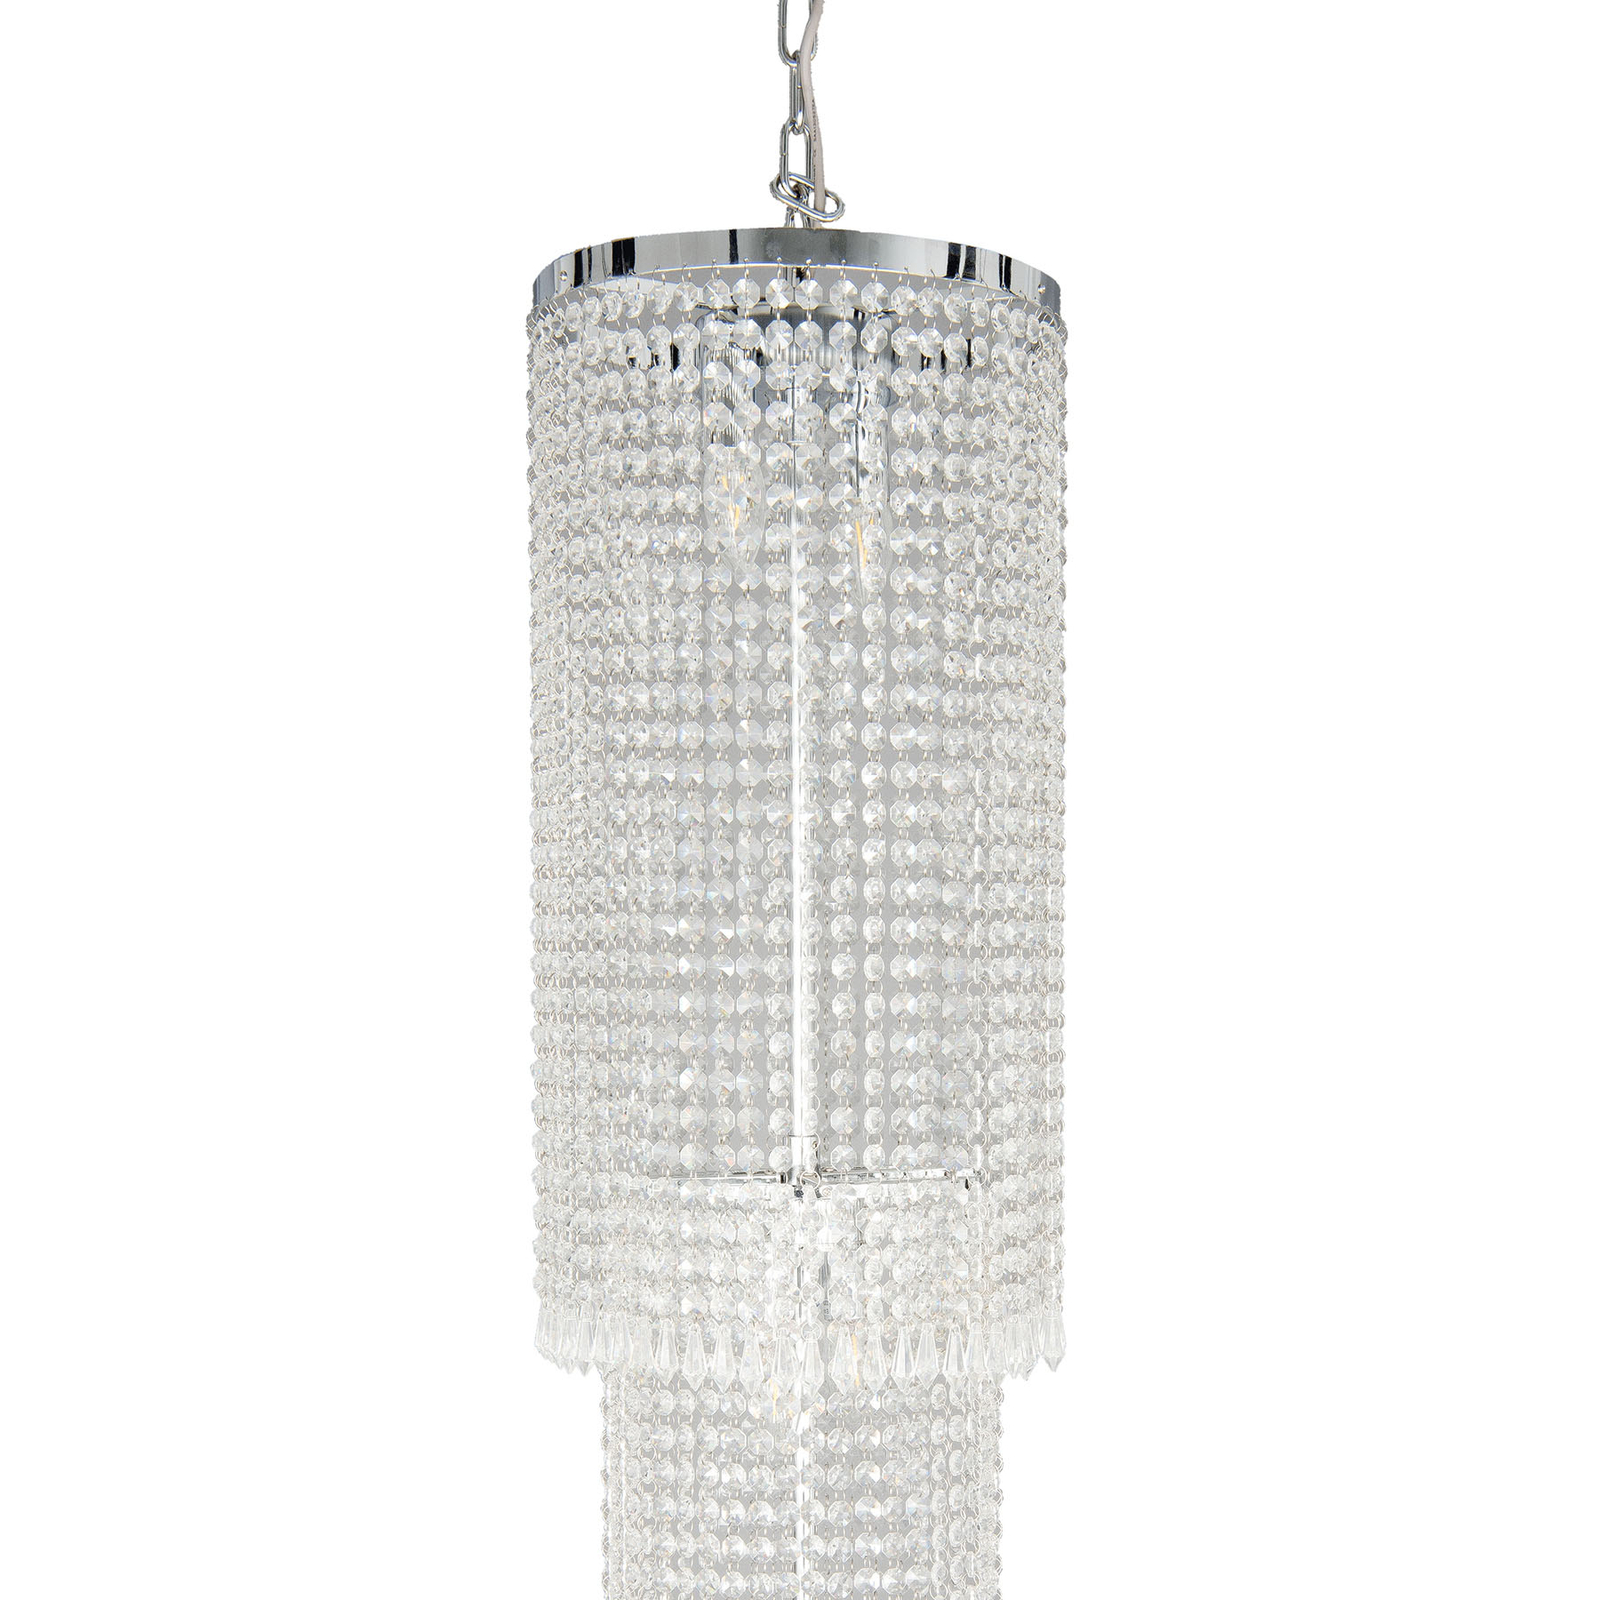 Lampa wisząca CR114 szklane ozdoby, wysokość 210cm